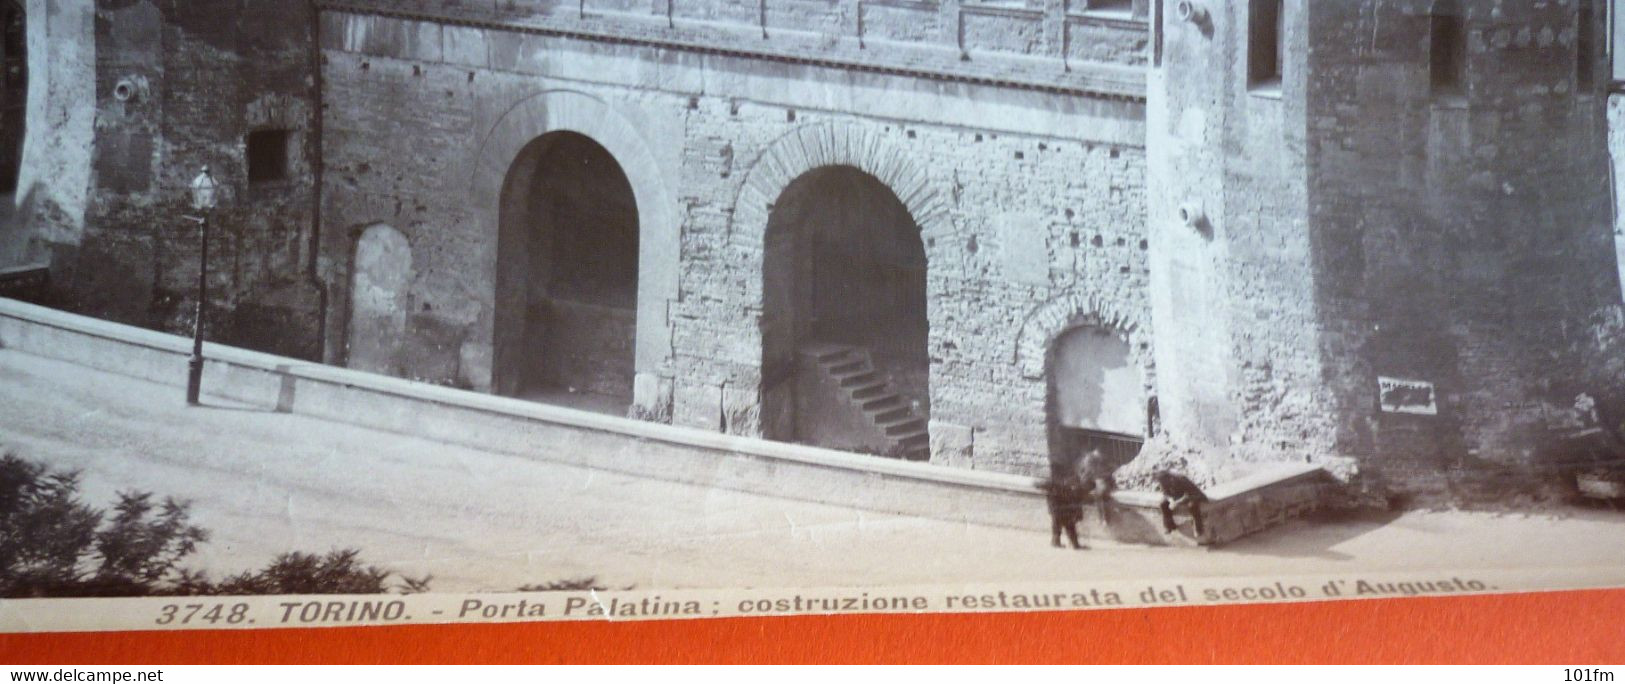 3748 TORINO - Porta Palatina , ORIGINAL PHOTO 25 X 19 Cm - Altri Monumenti, Edifici